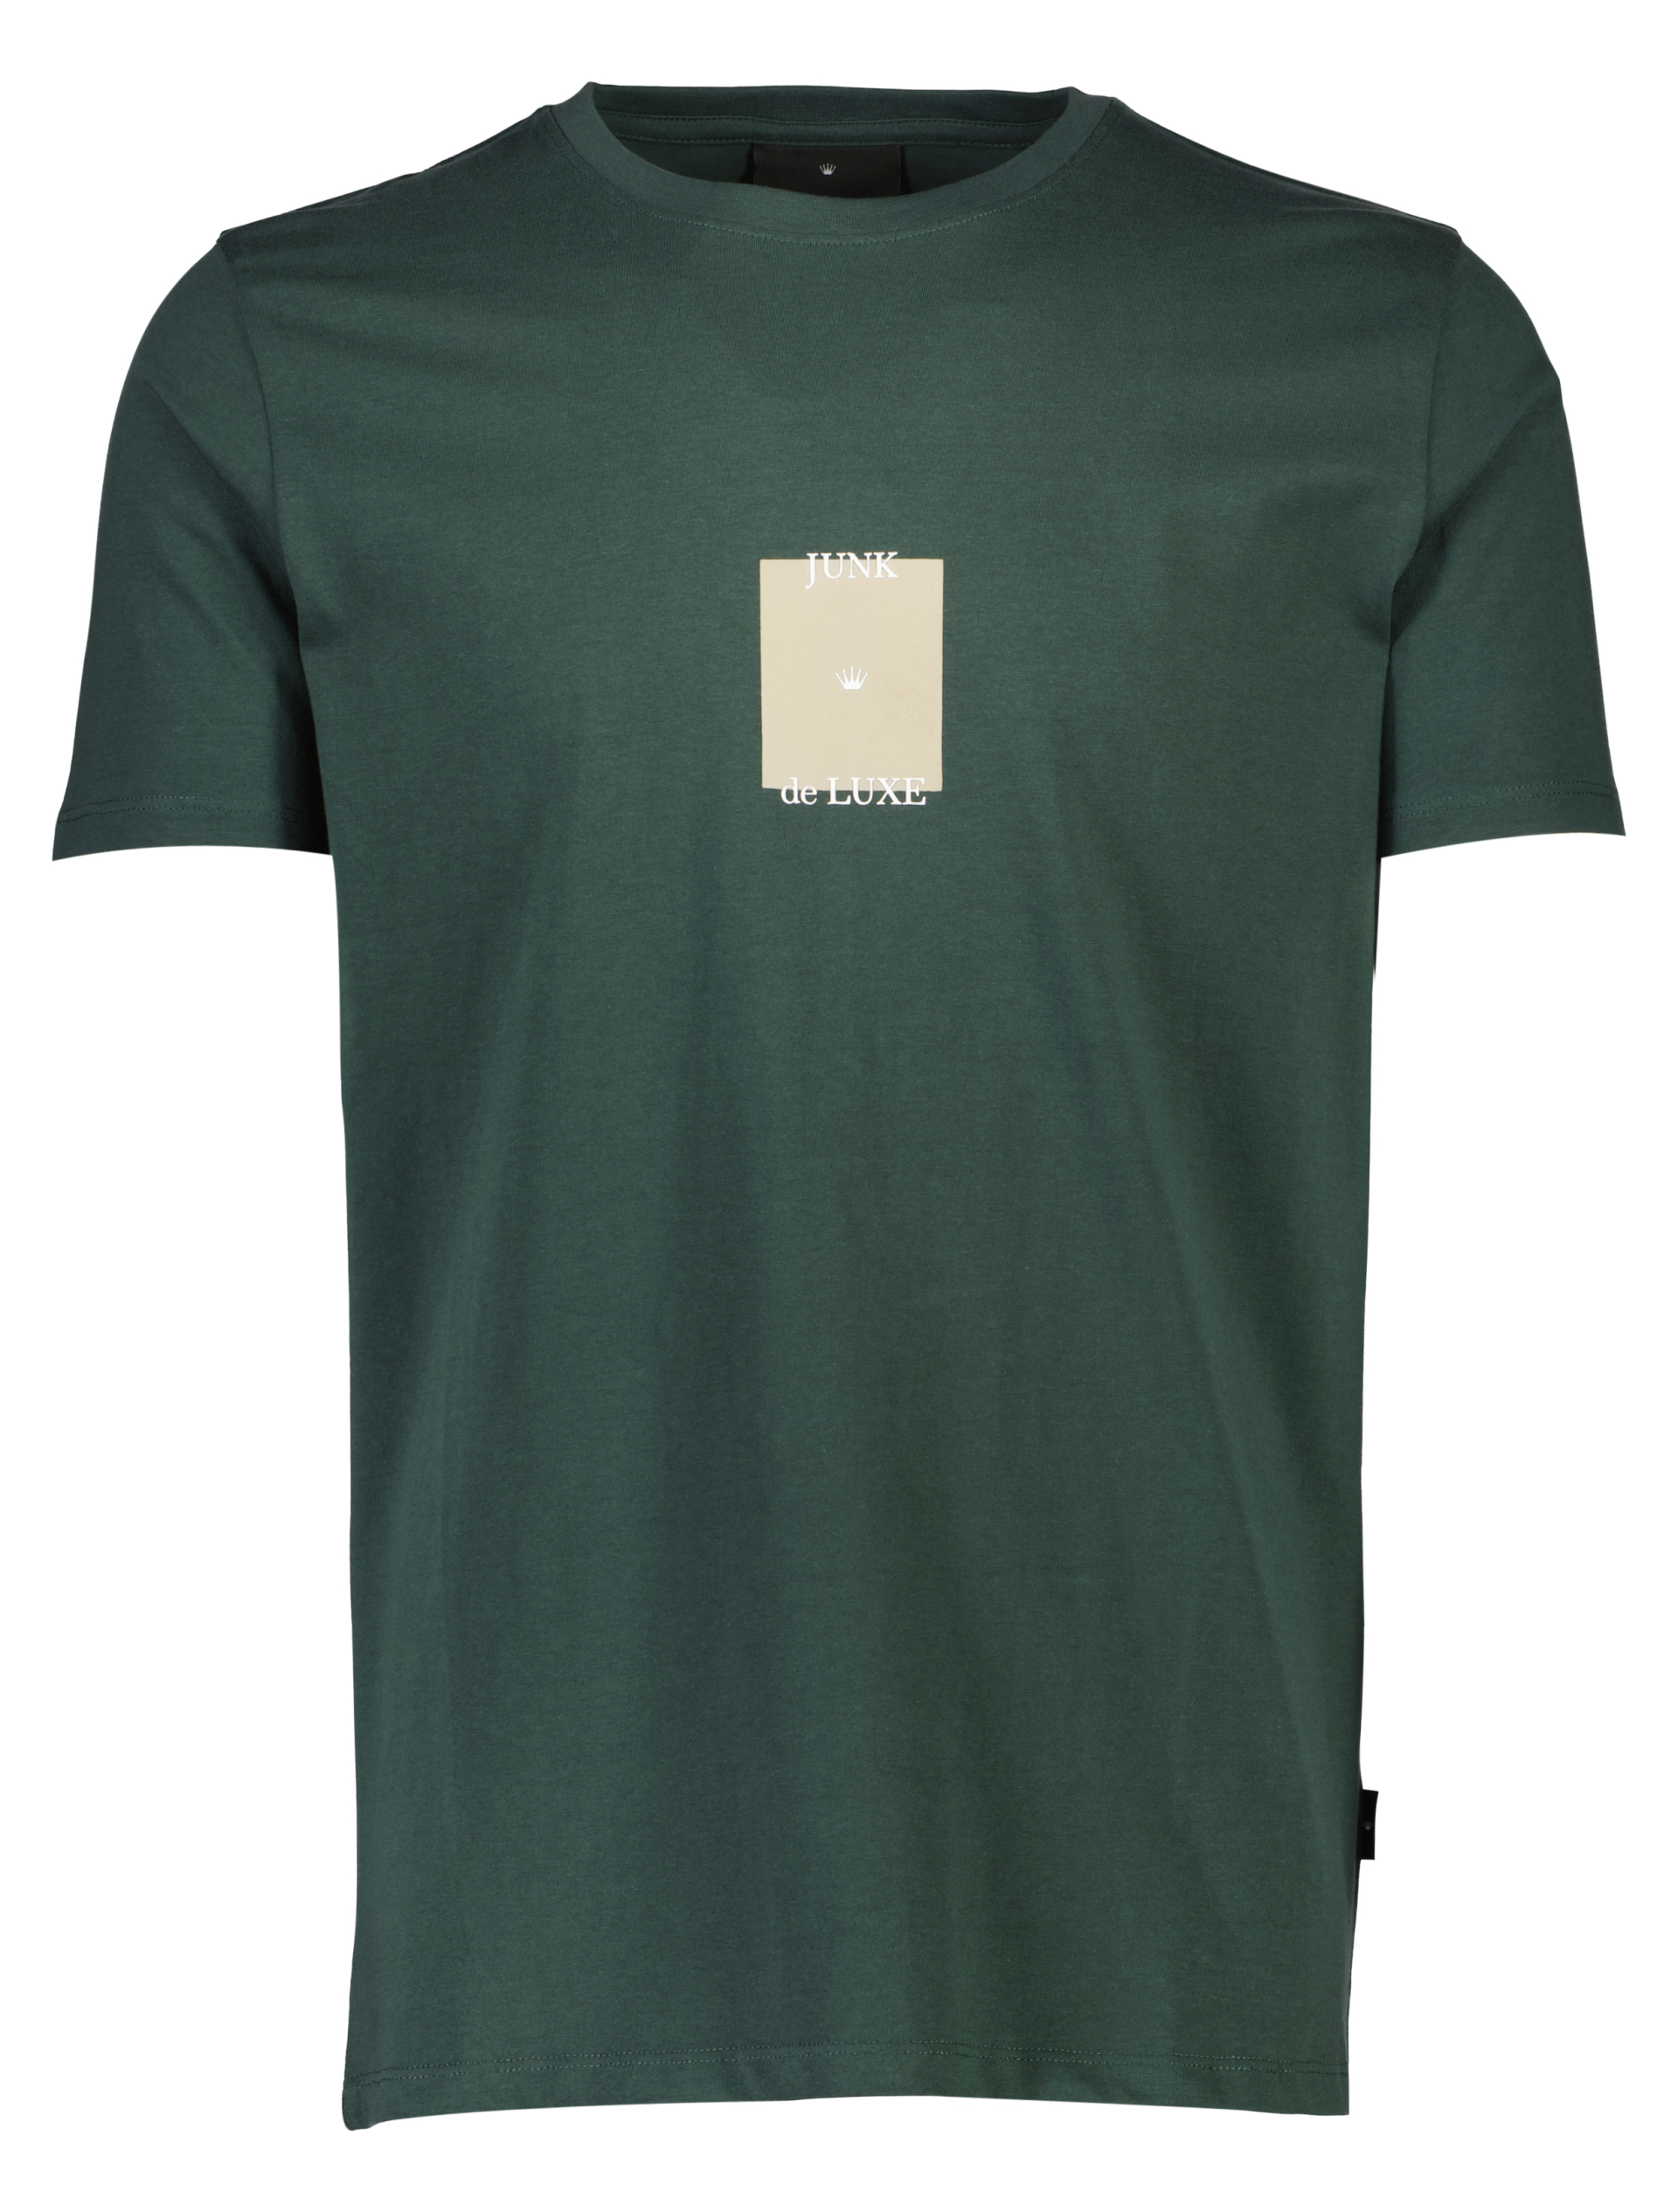 Junk de Luxe T-shirt grön / bottle green